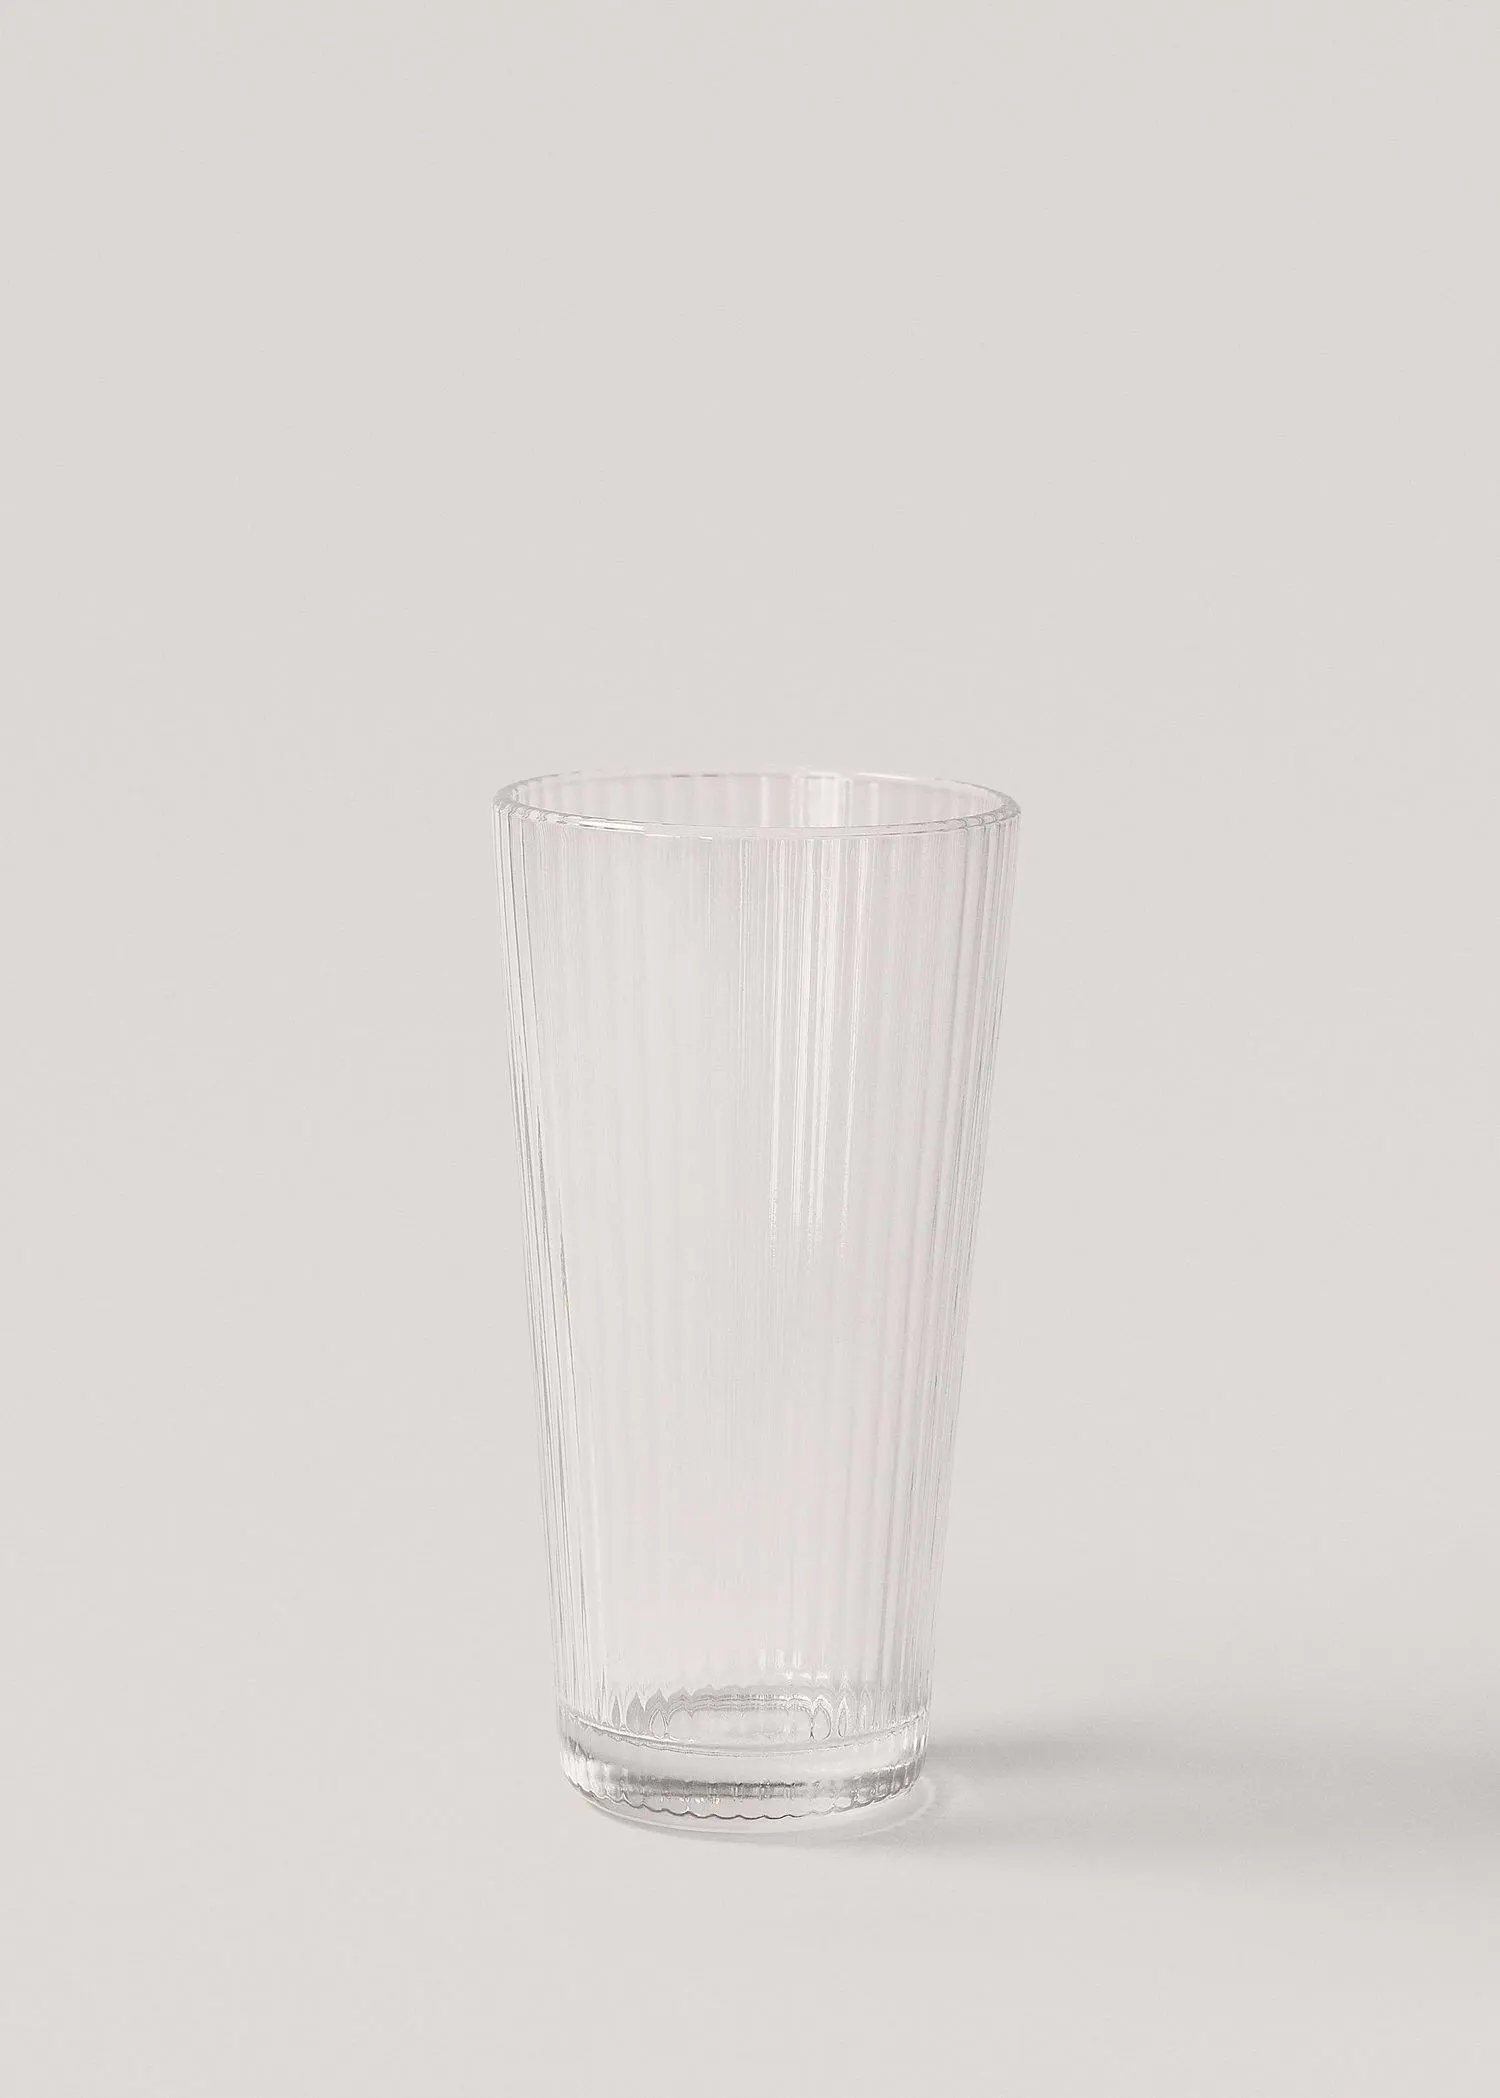 Mango 14 cm transparent glass with stripes. 1